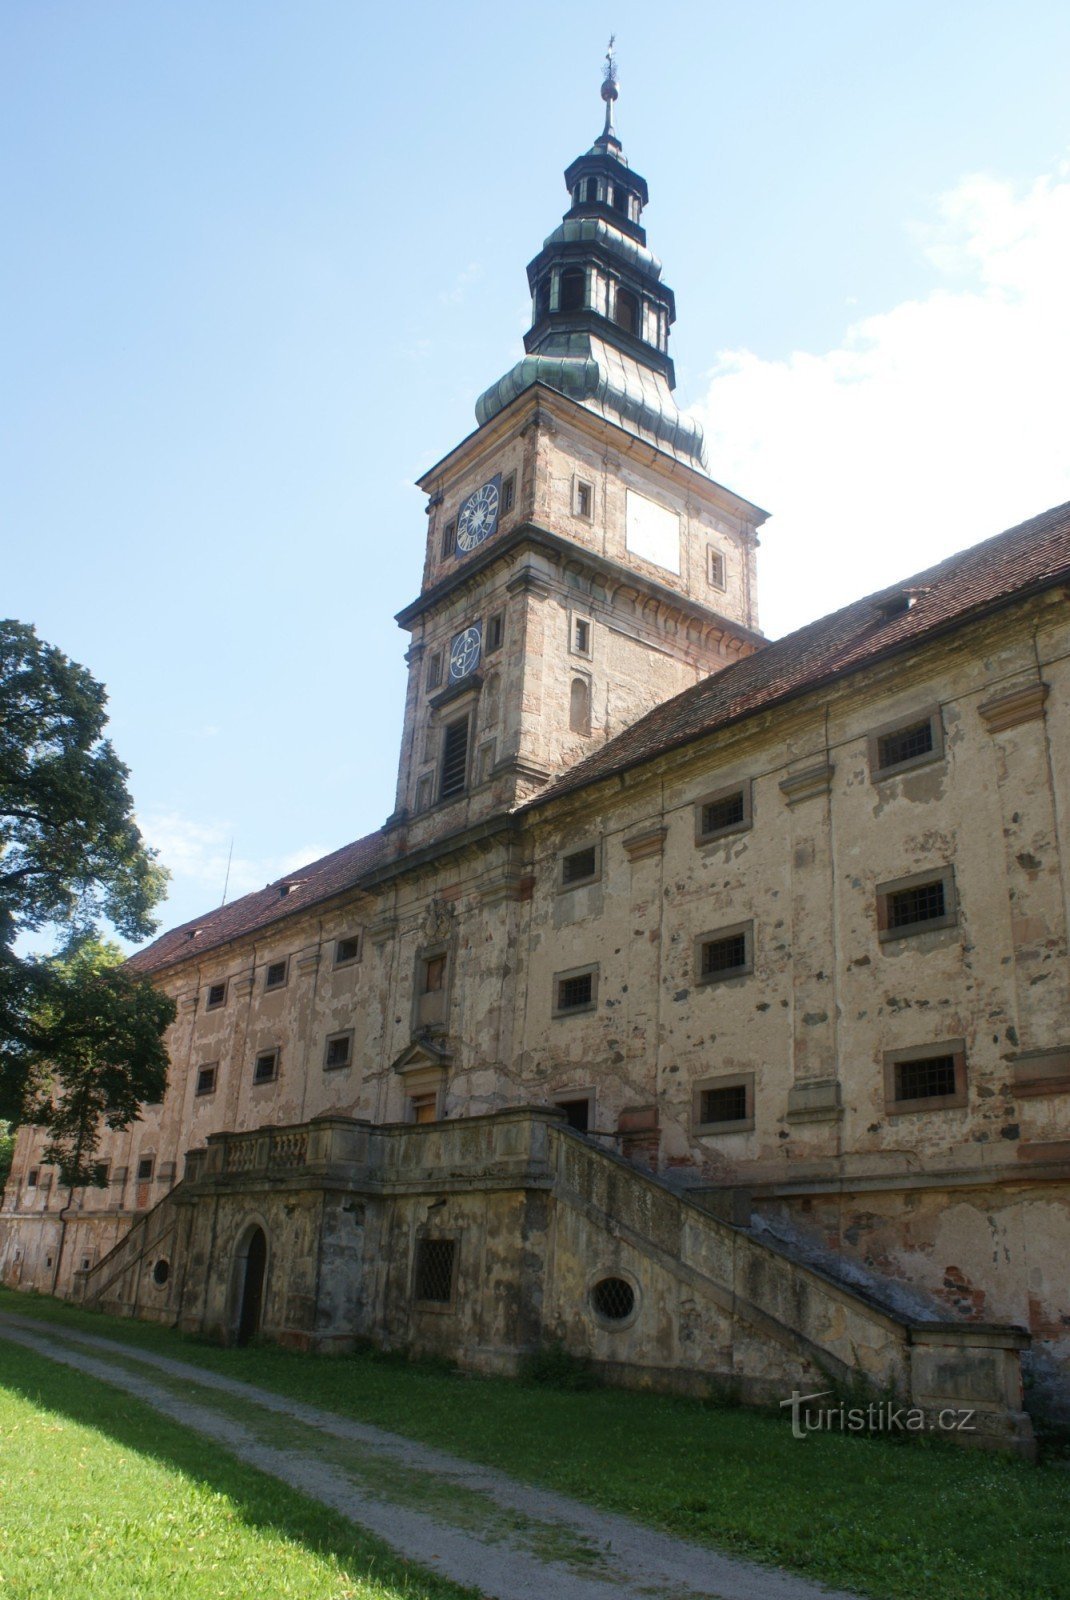 Μοναστήρι Plasy – ένας μπαρόκ σιταποθήκη με παρεκκλήσι και πύργο ρολογιού